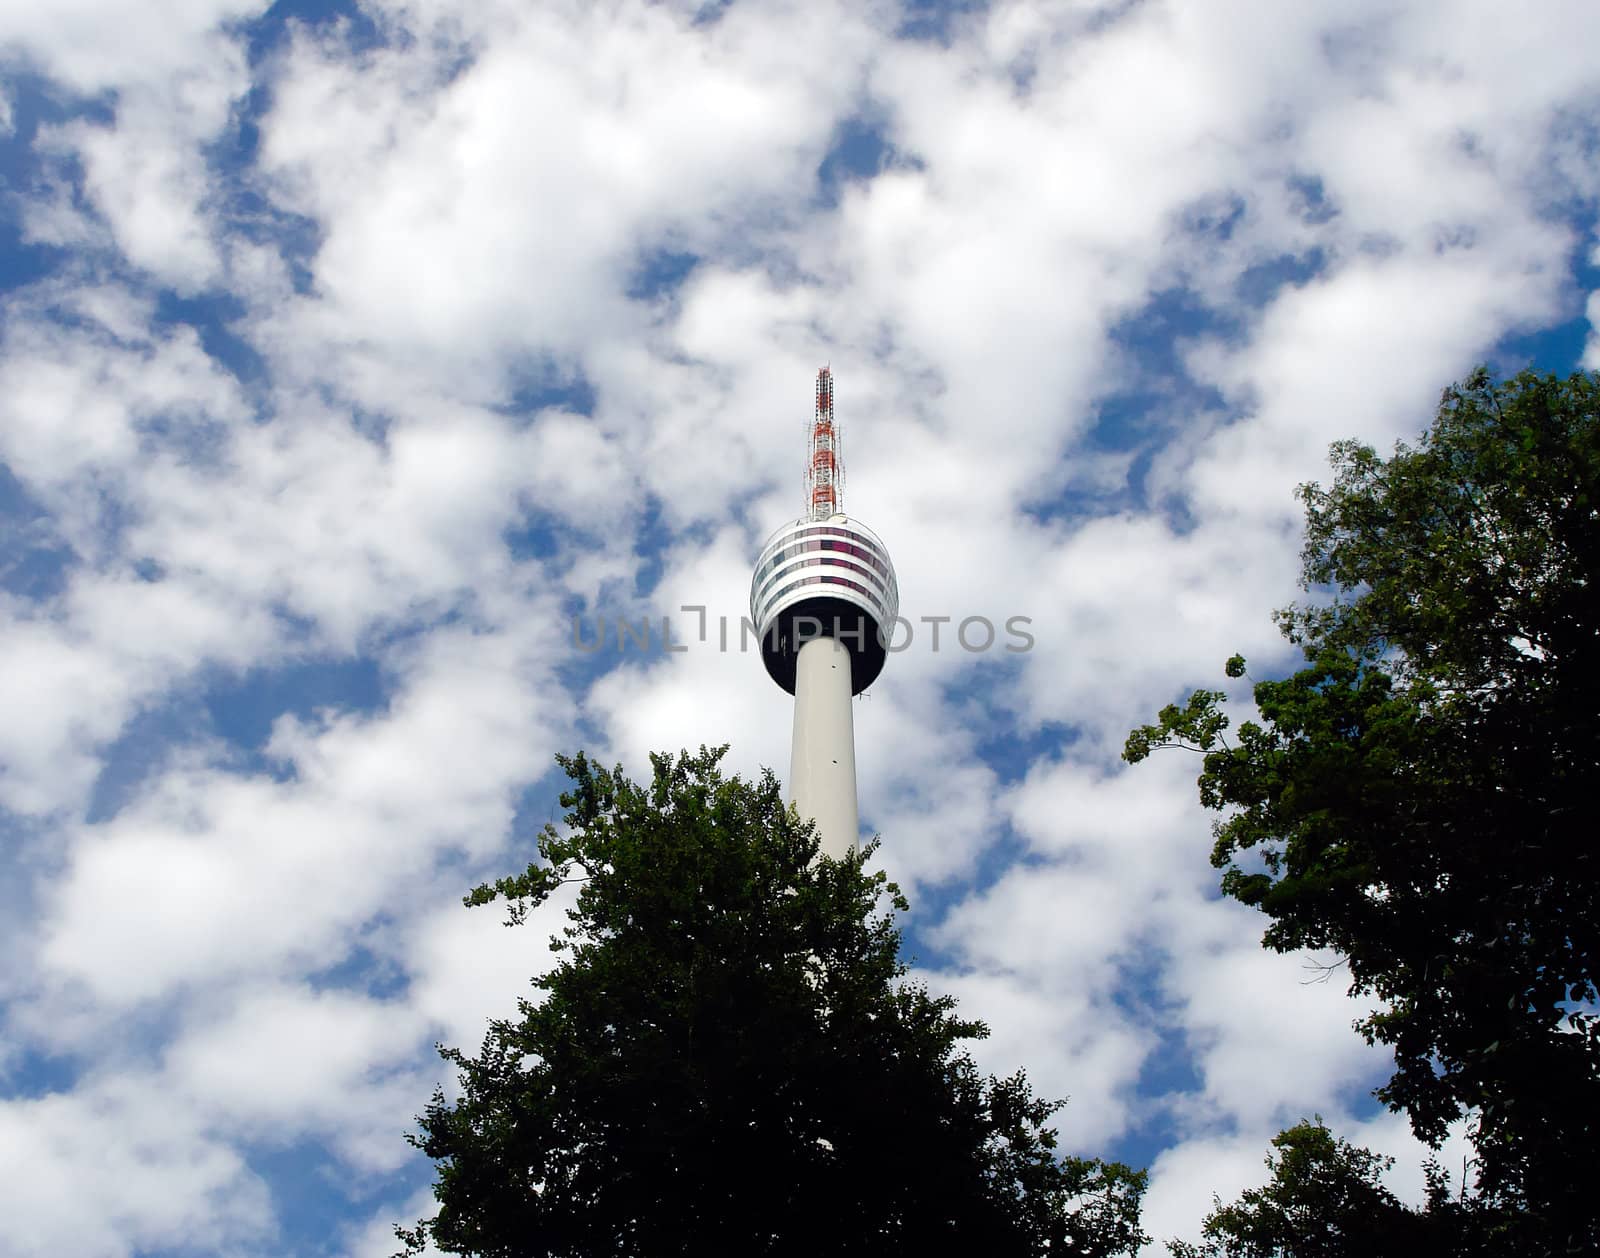 Stuttgart's TV tower by tending